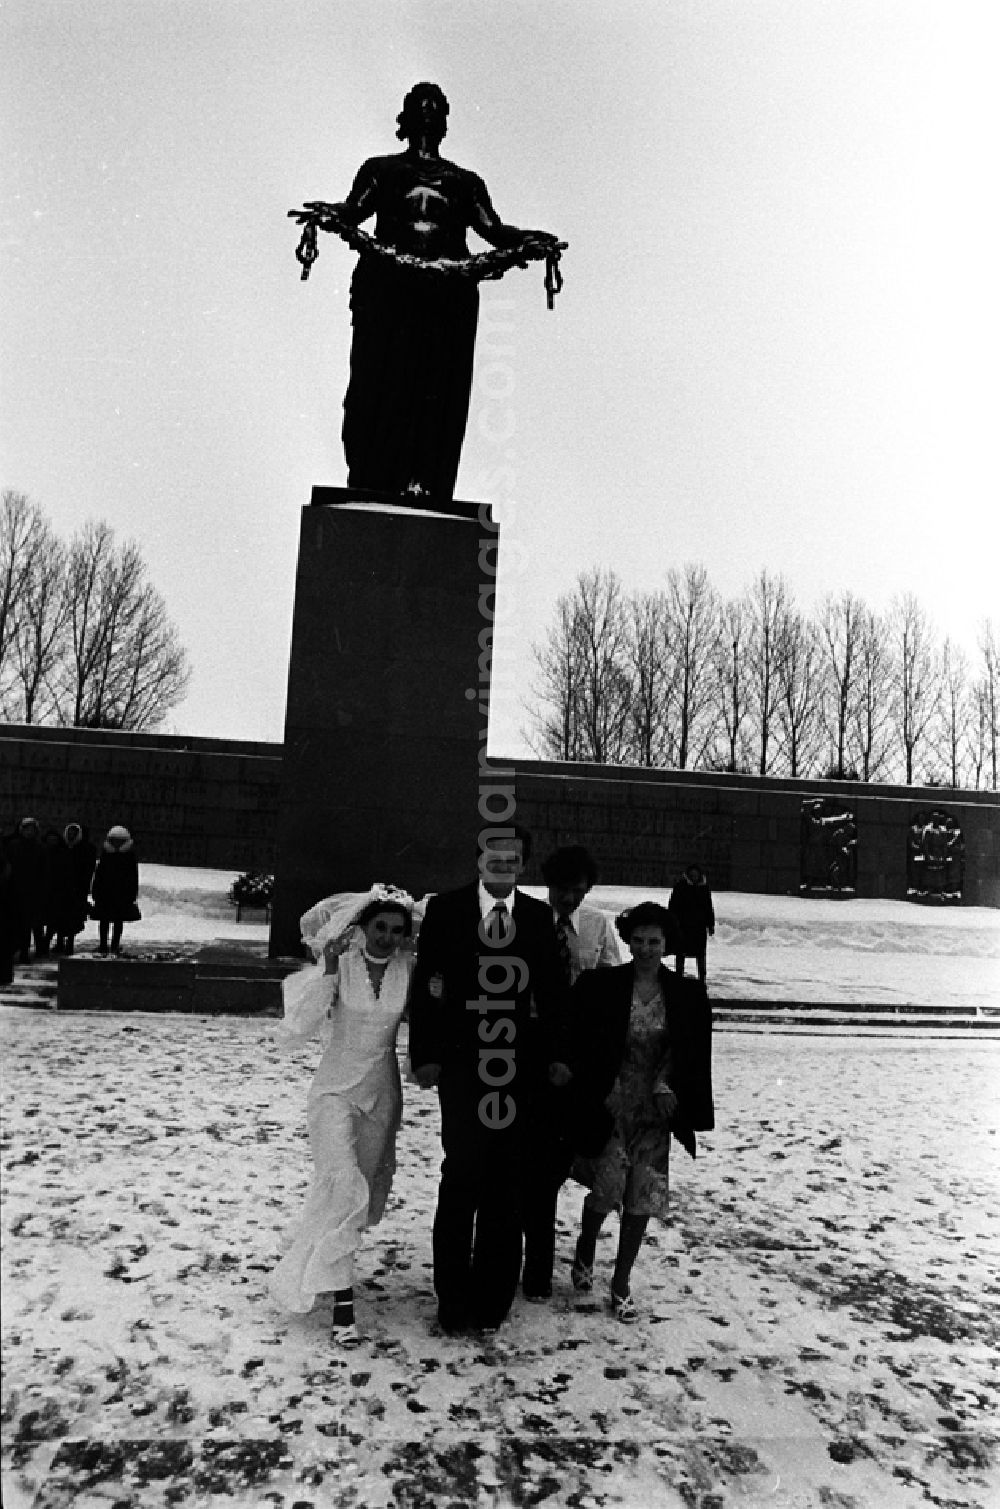 Leningrad: Der Piskarowskoje-Friedhof ist ein Gedenkfriedhof für die Opfer der Blockade Leningrads durch deutsche Truppen während des 2. Weltkrieges. 1960 wurde dieser Friedhof der Öffentlichkeit übergeben. Er gehört zu insgesamt fünf Gedenkfriedhöfen in Leningrad. Während der Blockade starben mehr als 640.000 Menschen den Hungertod, davon sind ungefähr 400.00